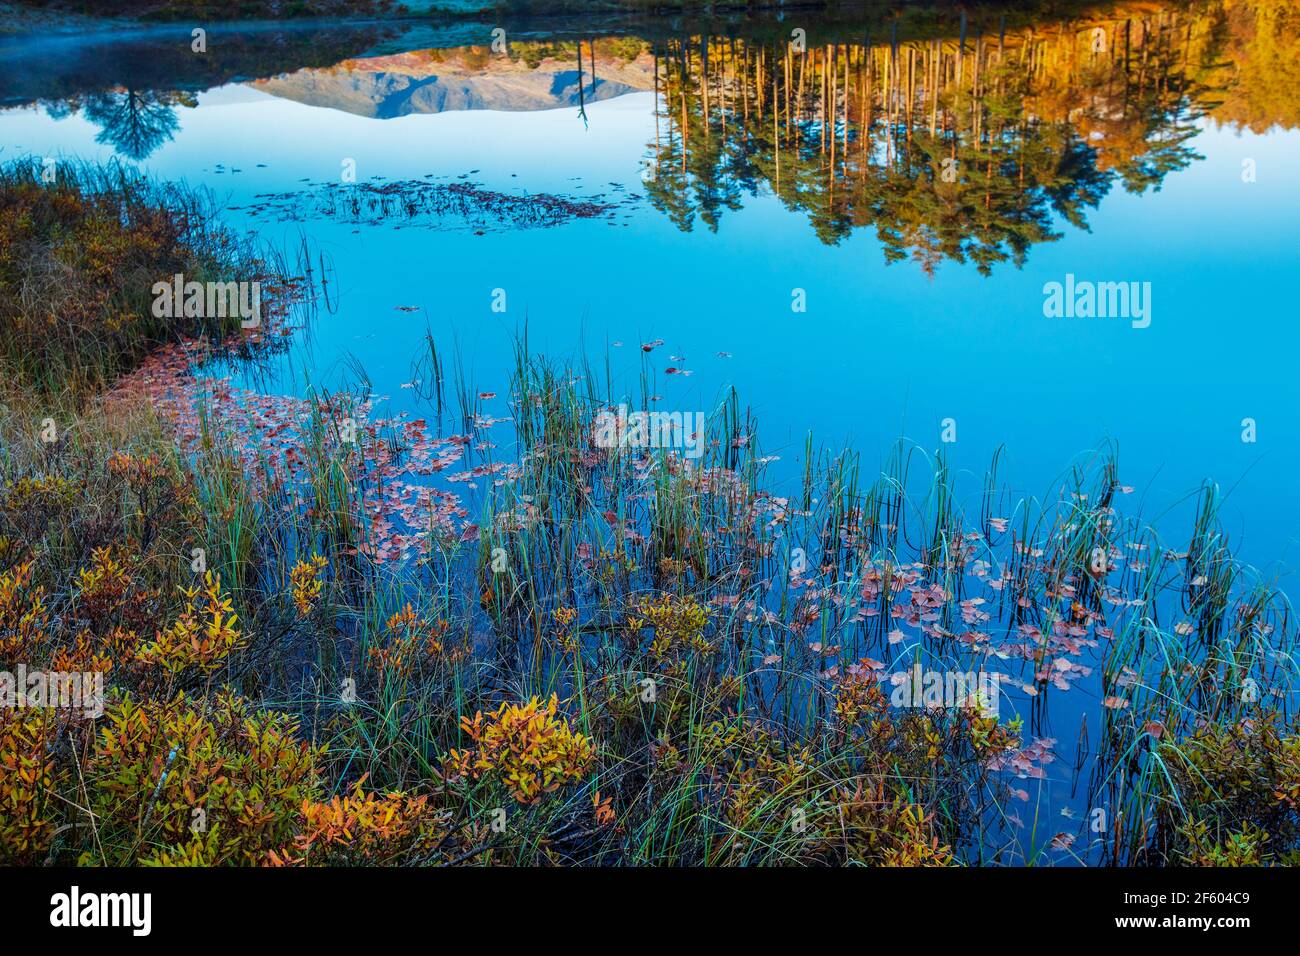 Cerca de Tarn Hows lago en Cumbria con vibrante plantas acuáticas y reflejos de las colinas y árboles circundantes Foto de stock